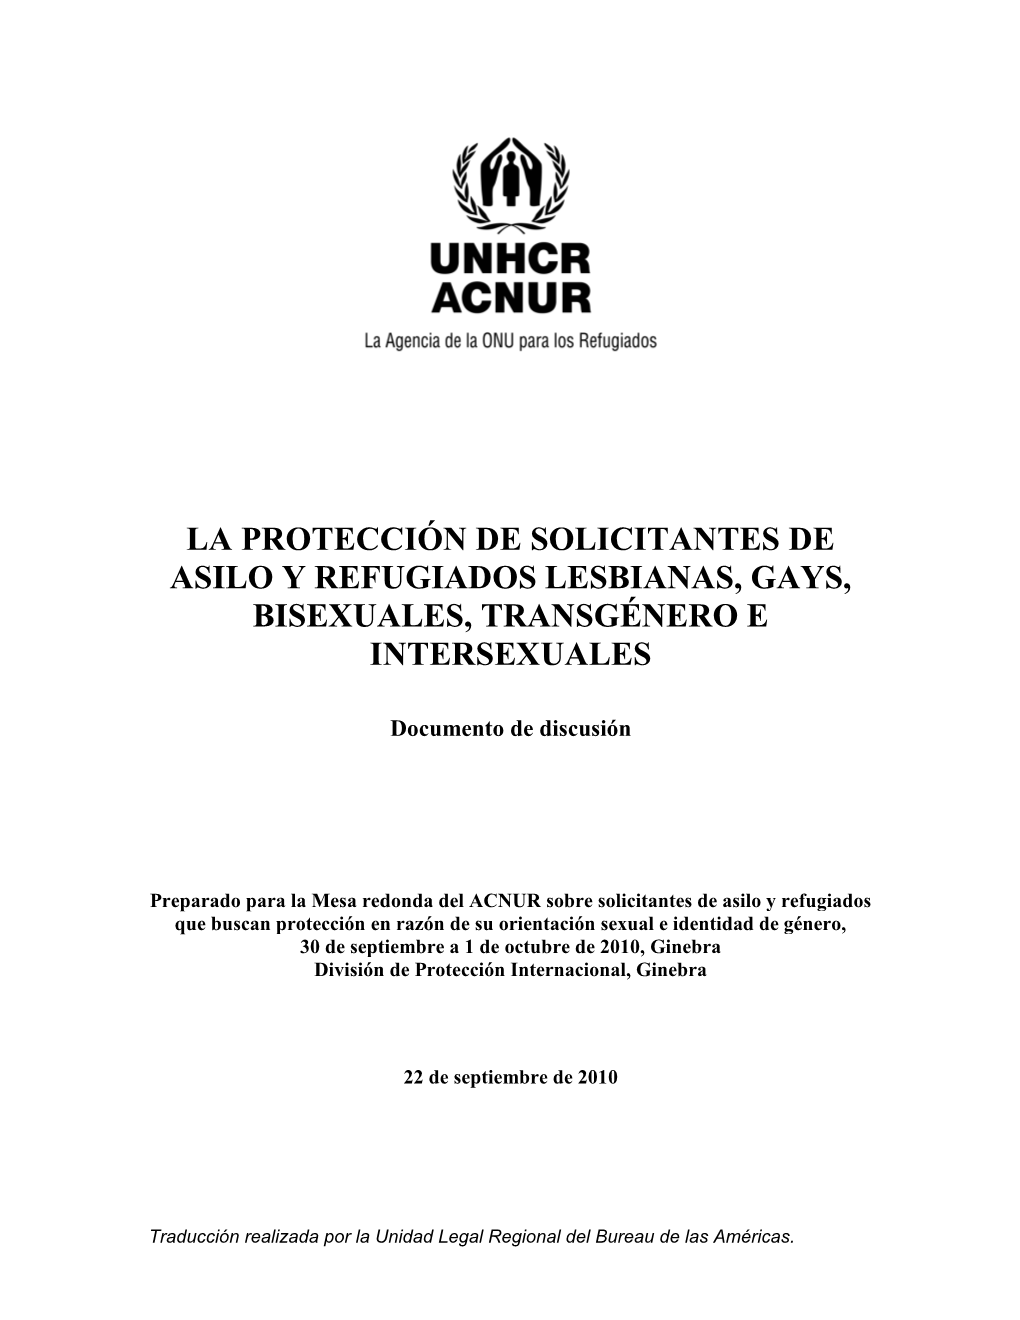 Documento De Discusión: La Protección De Solicitantes De Asilo